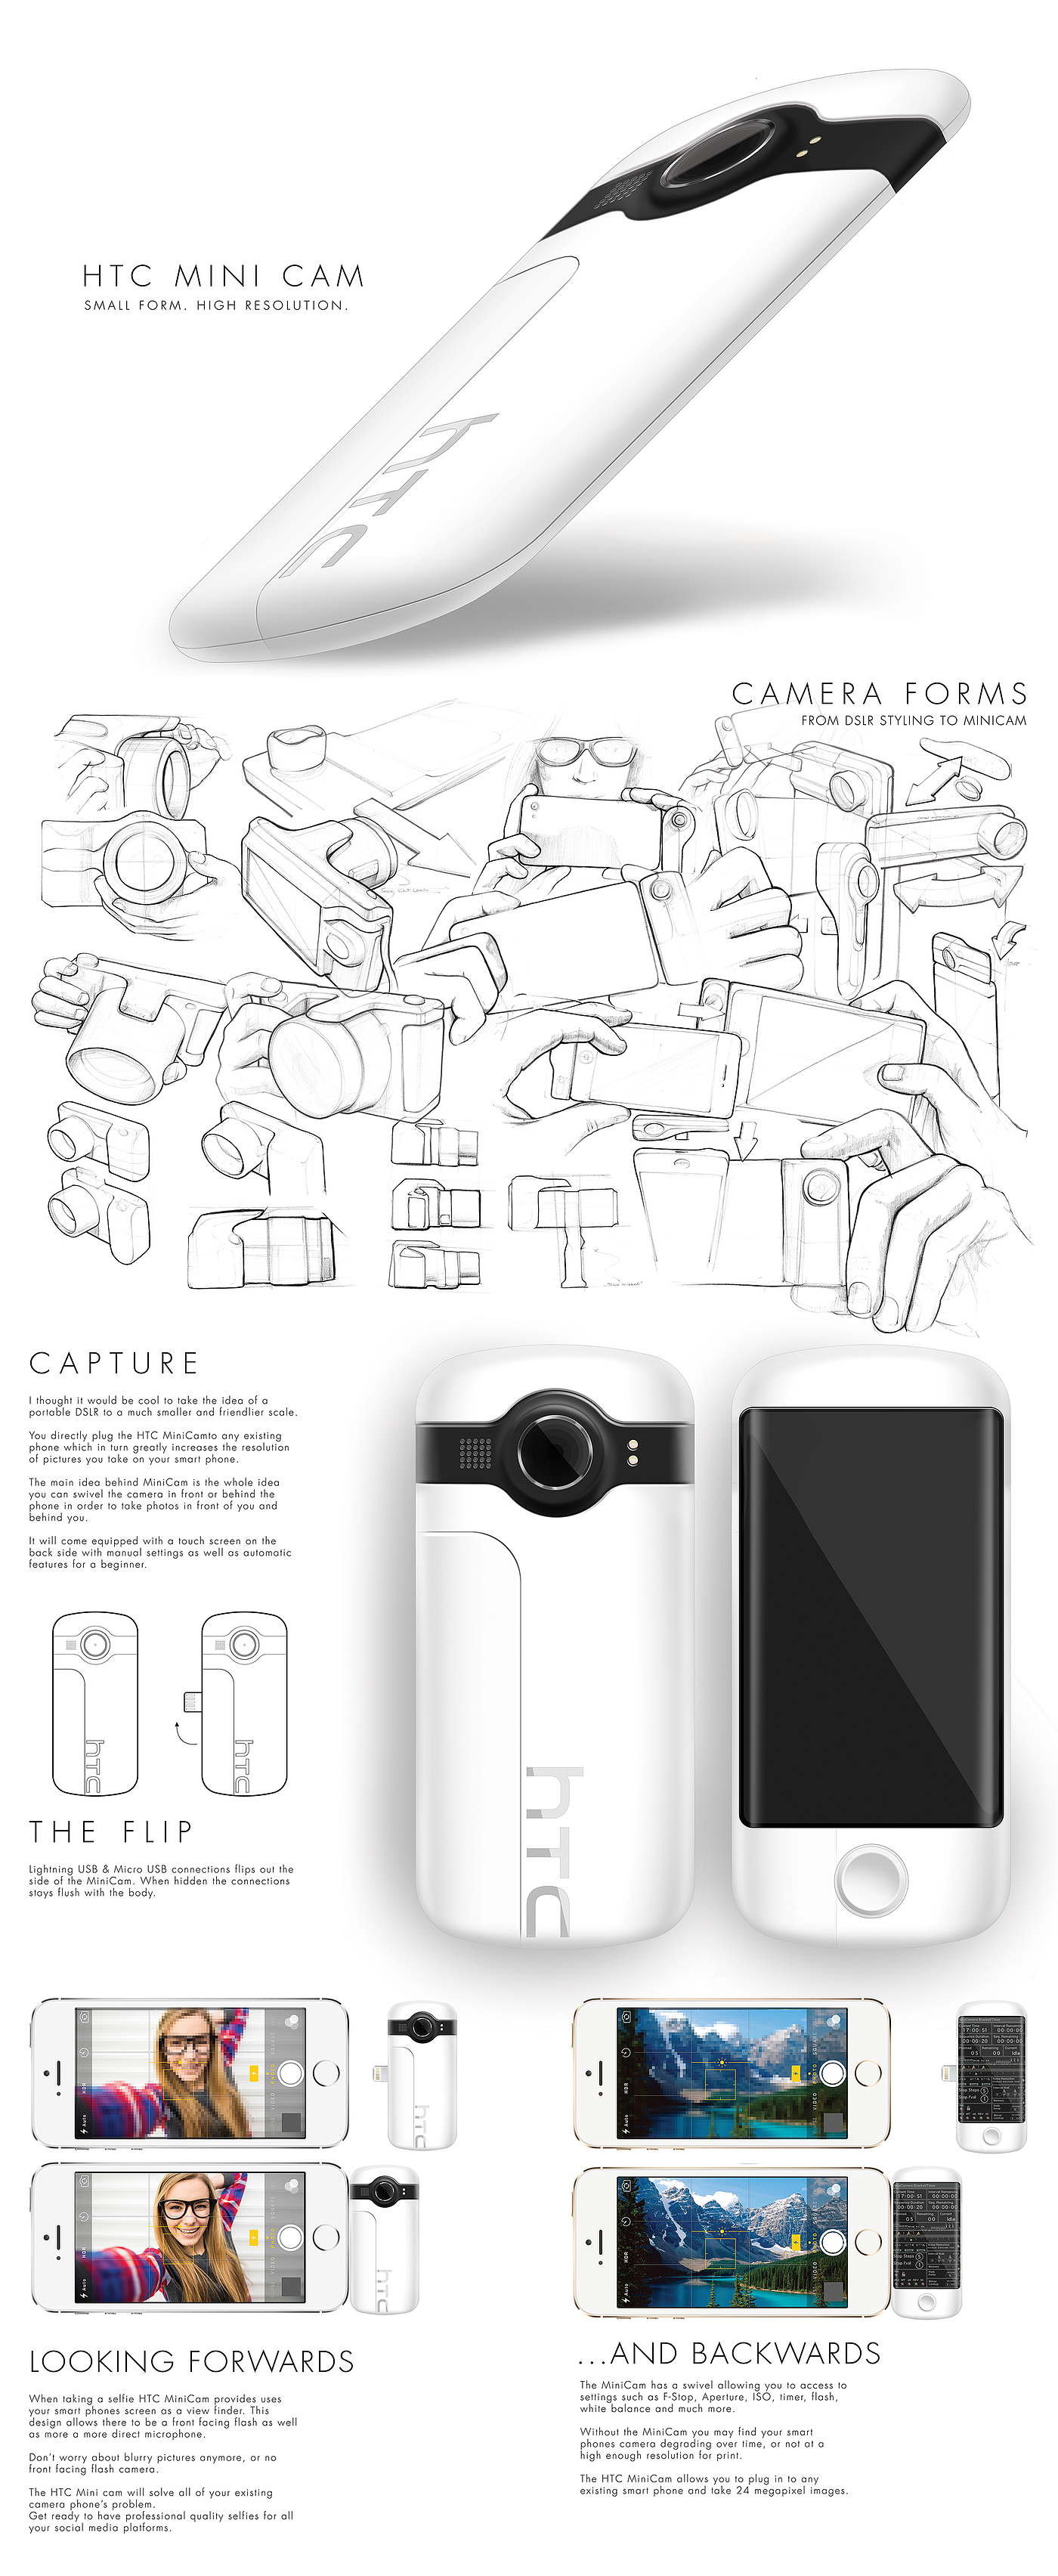 分辨率，高清，相机，便携，HTC MiniCam，